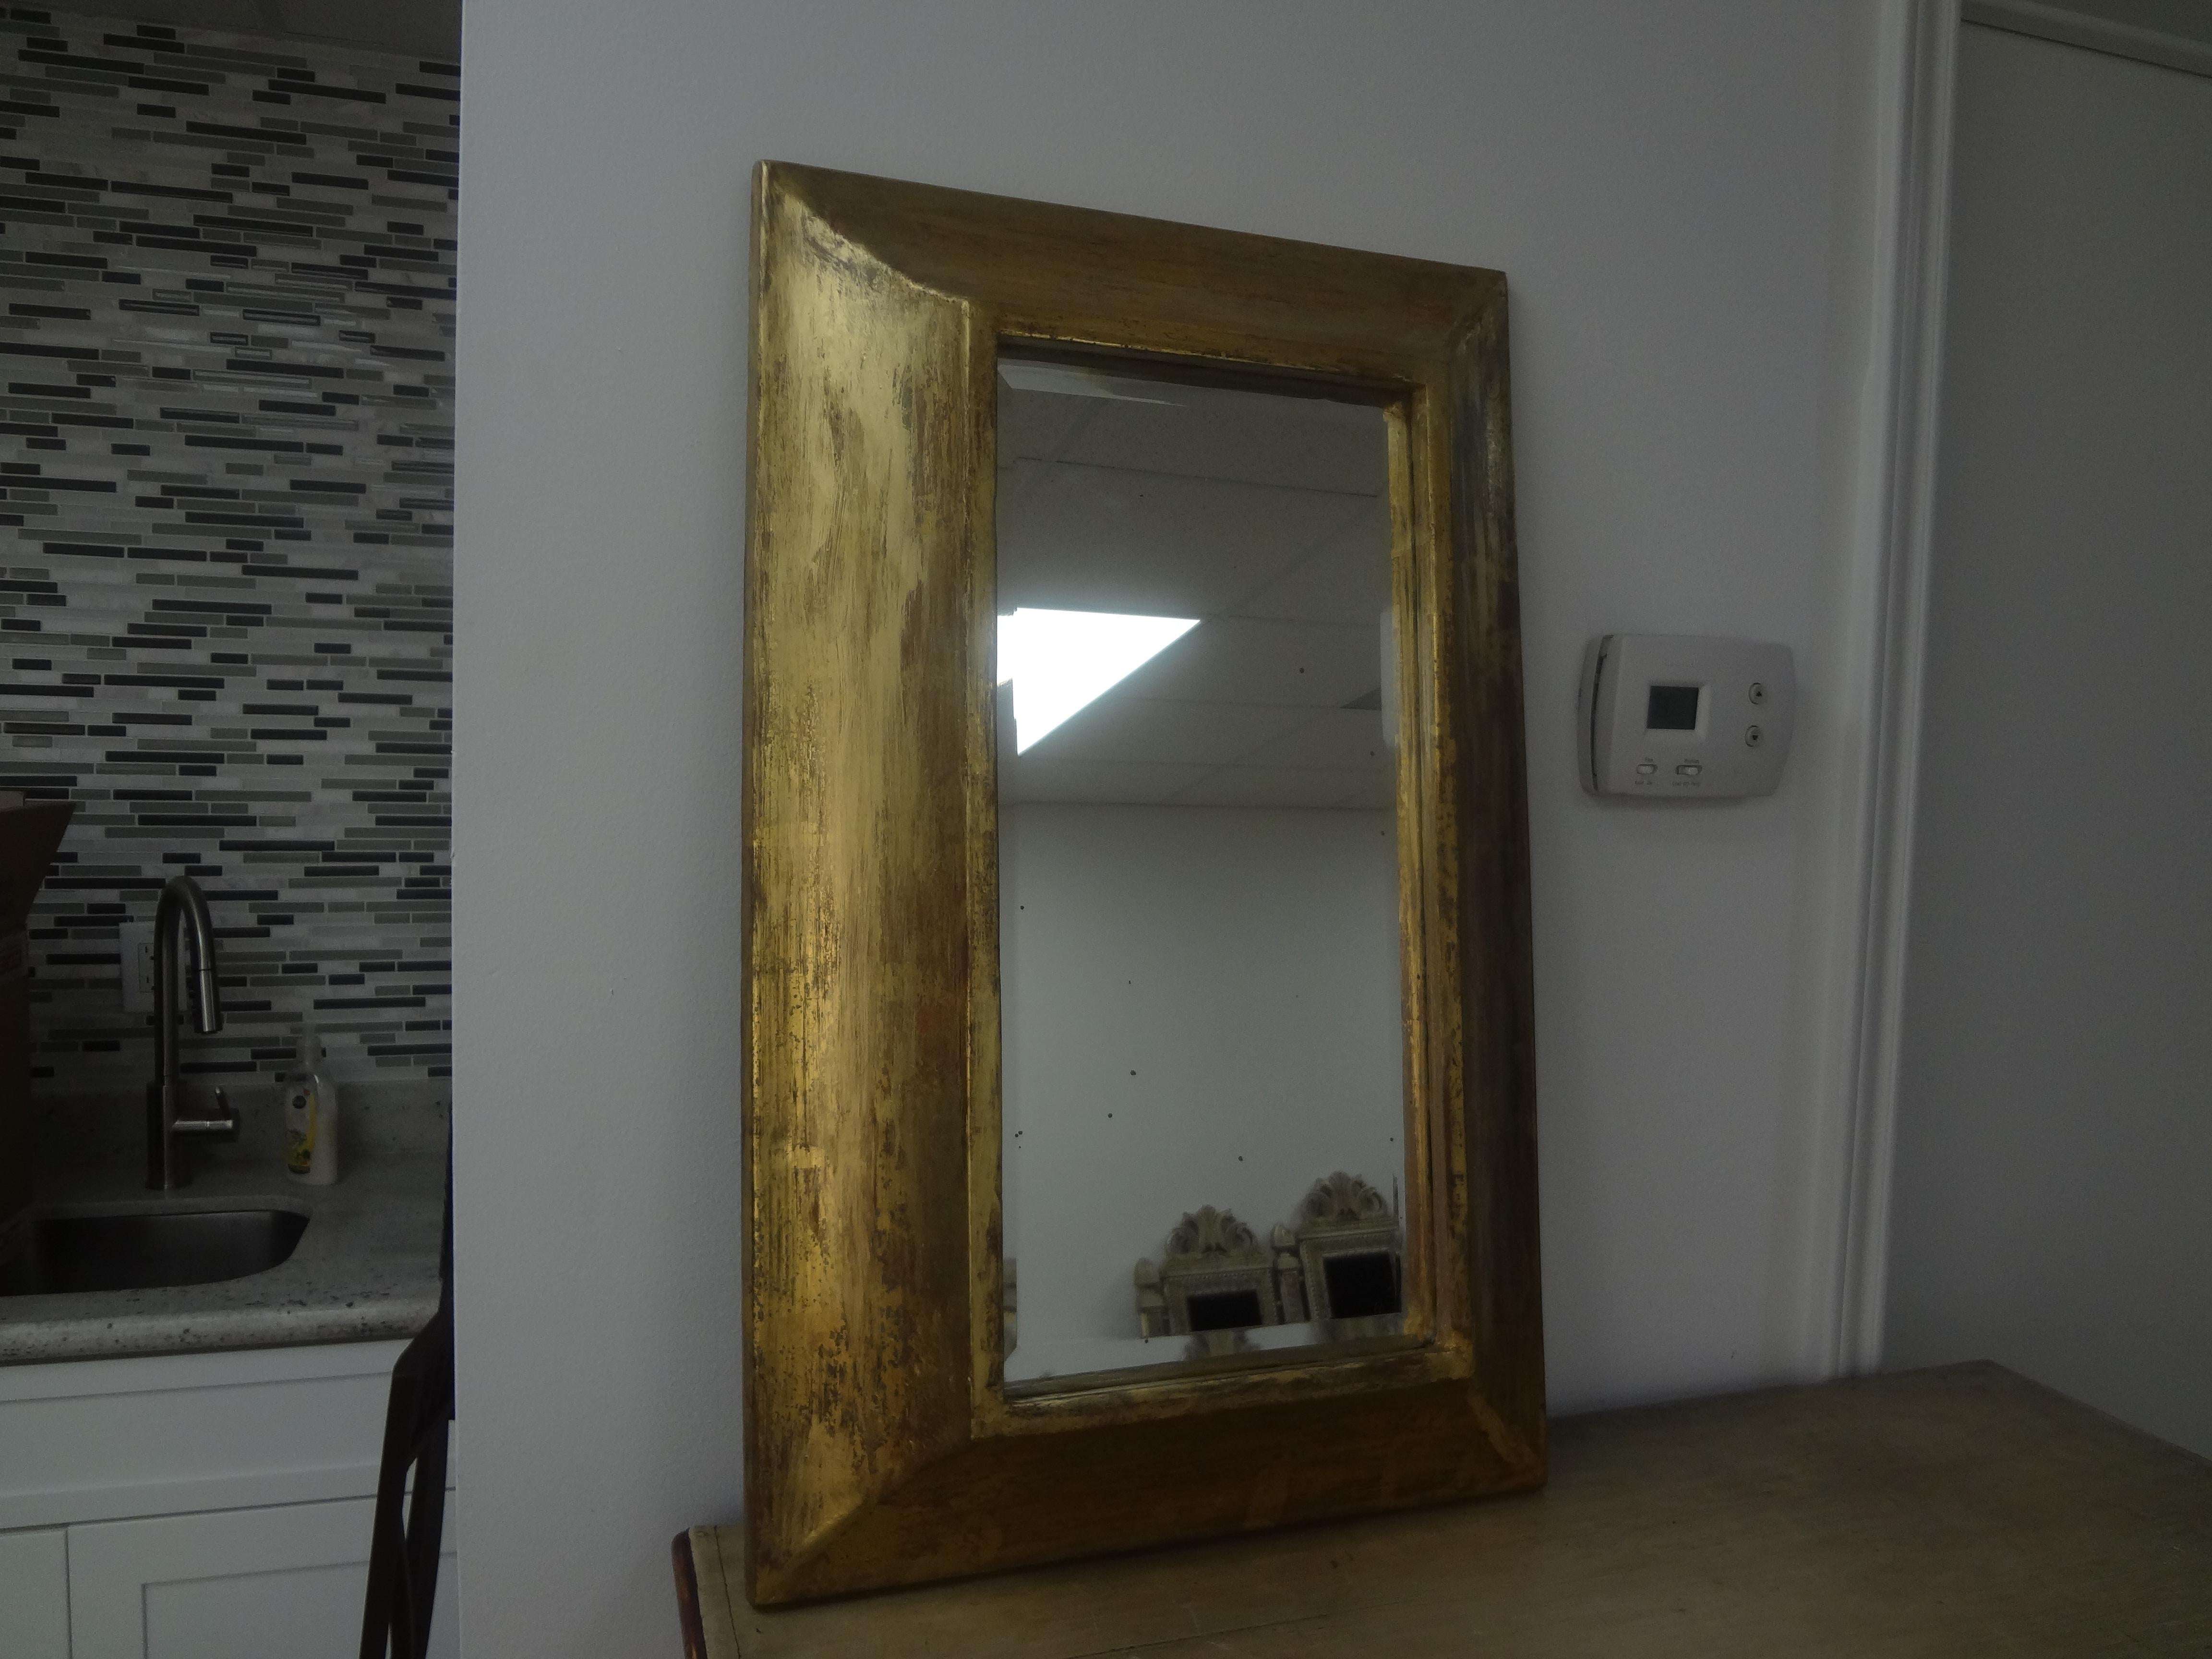 Miroir vintage en bois doré. Ce miroir doré, probablement italien, a un cadre profond qui lui donne un effet tridimensionnel.
Il conviendrait parfaitement dans une salle d'eau ou associé à d'autres miroirs.